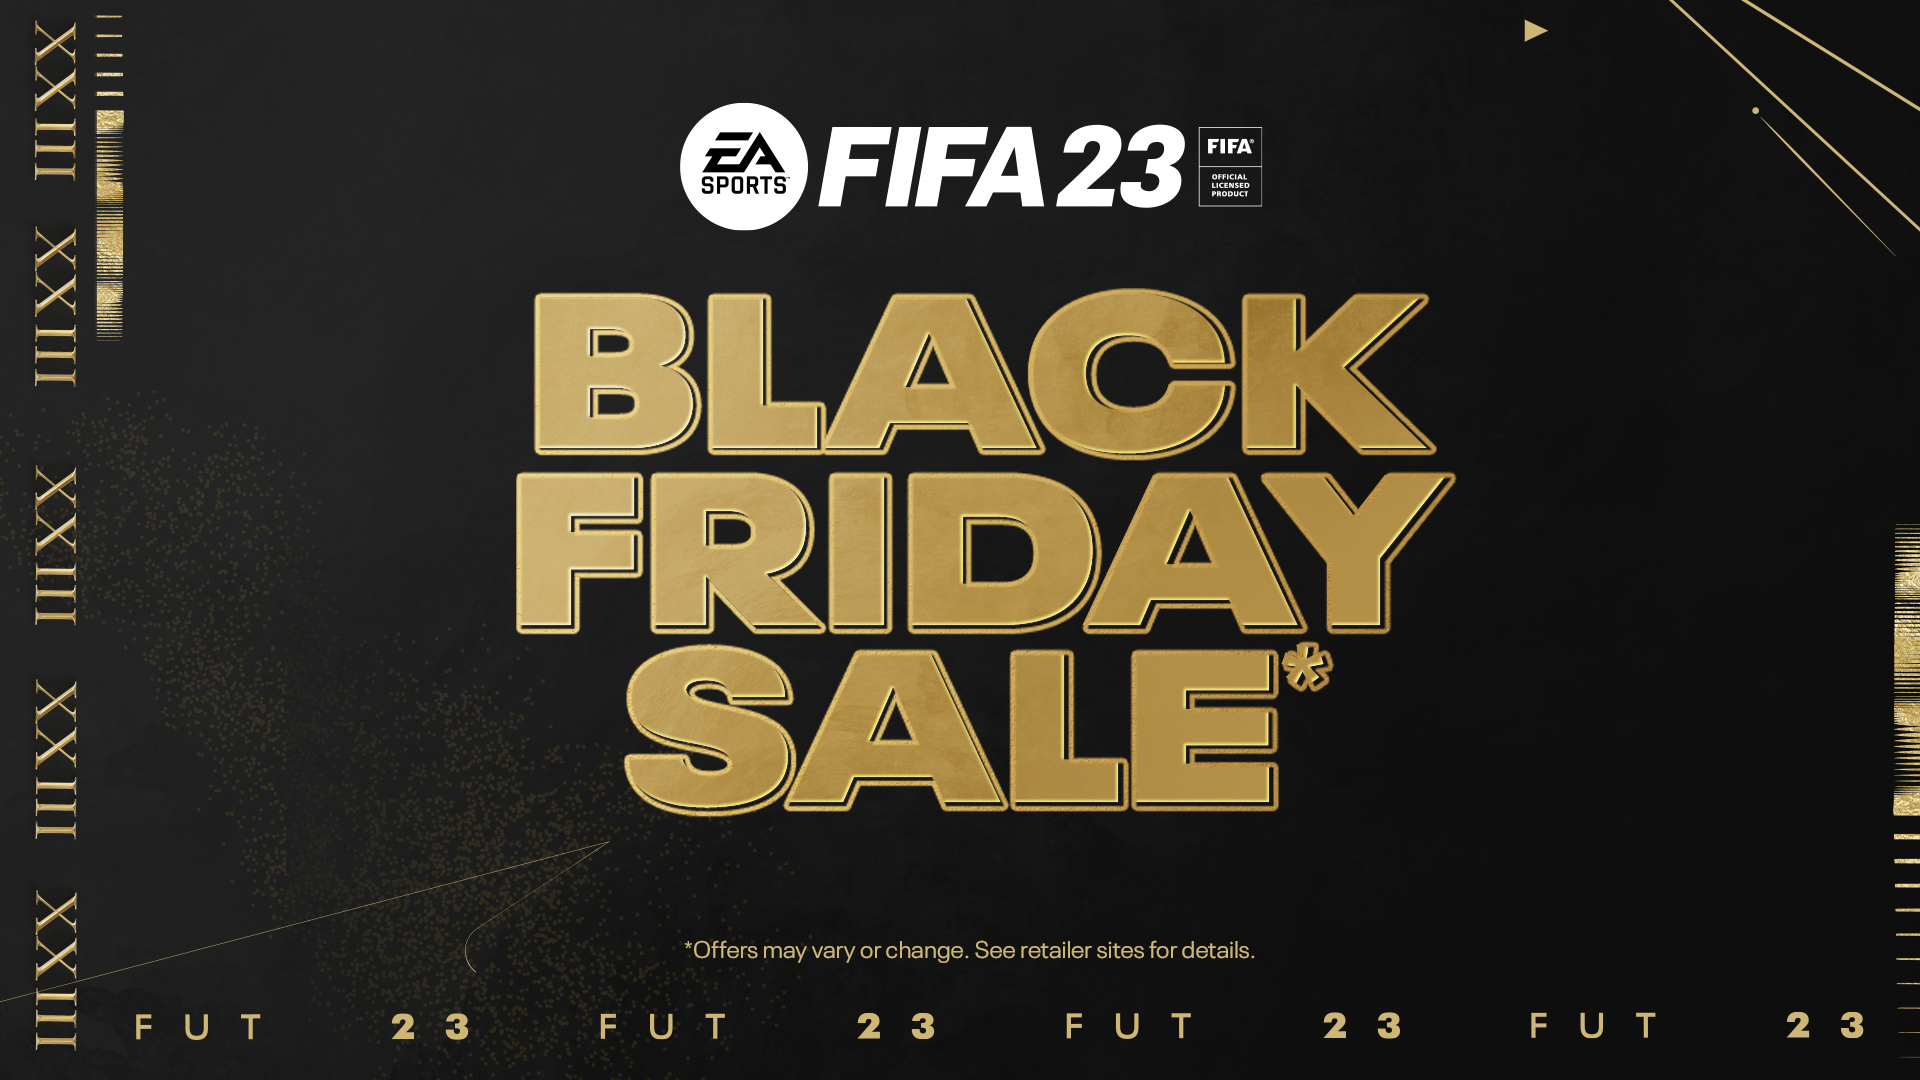 FIFA 23: Black Friday sale - Black Friday Sale: Black Friday đang đến và FIFA 23 đã sẵn sàng để mang đến cho người chơi những ưu đãi hấp dẫn nhất trong năm. Đừng bỏ lỡ cơ hội để sở hữu FIFA 23 với mức giá hời và cảm nhận những tính năng đột phá của trò chơi. Xem ngay hình ảnh liên quan để biết thêm chi tiết.